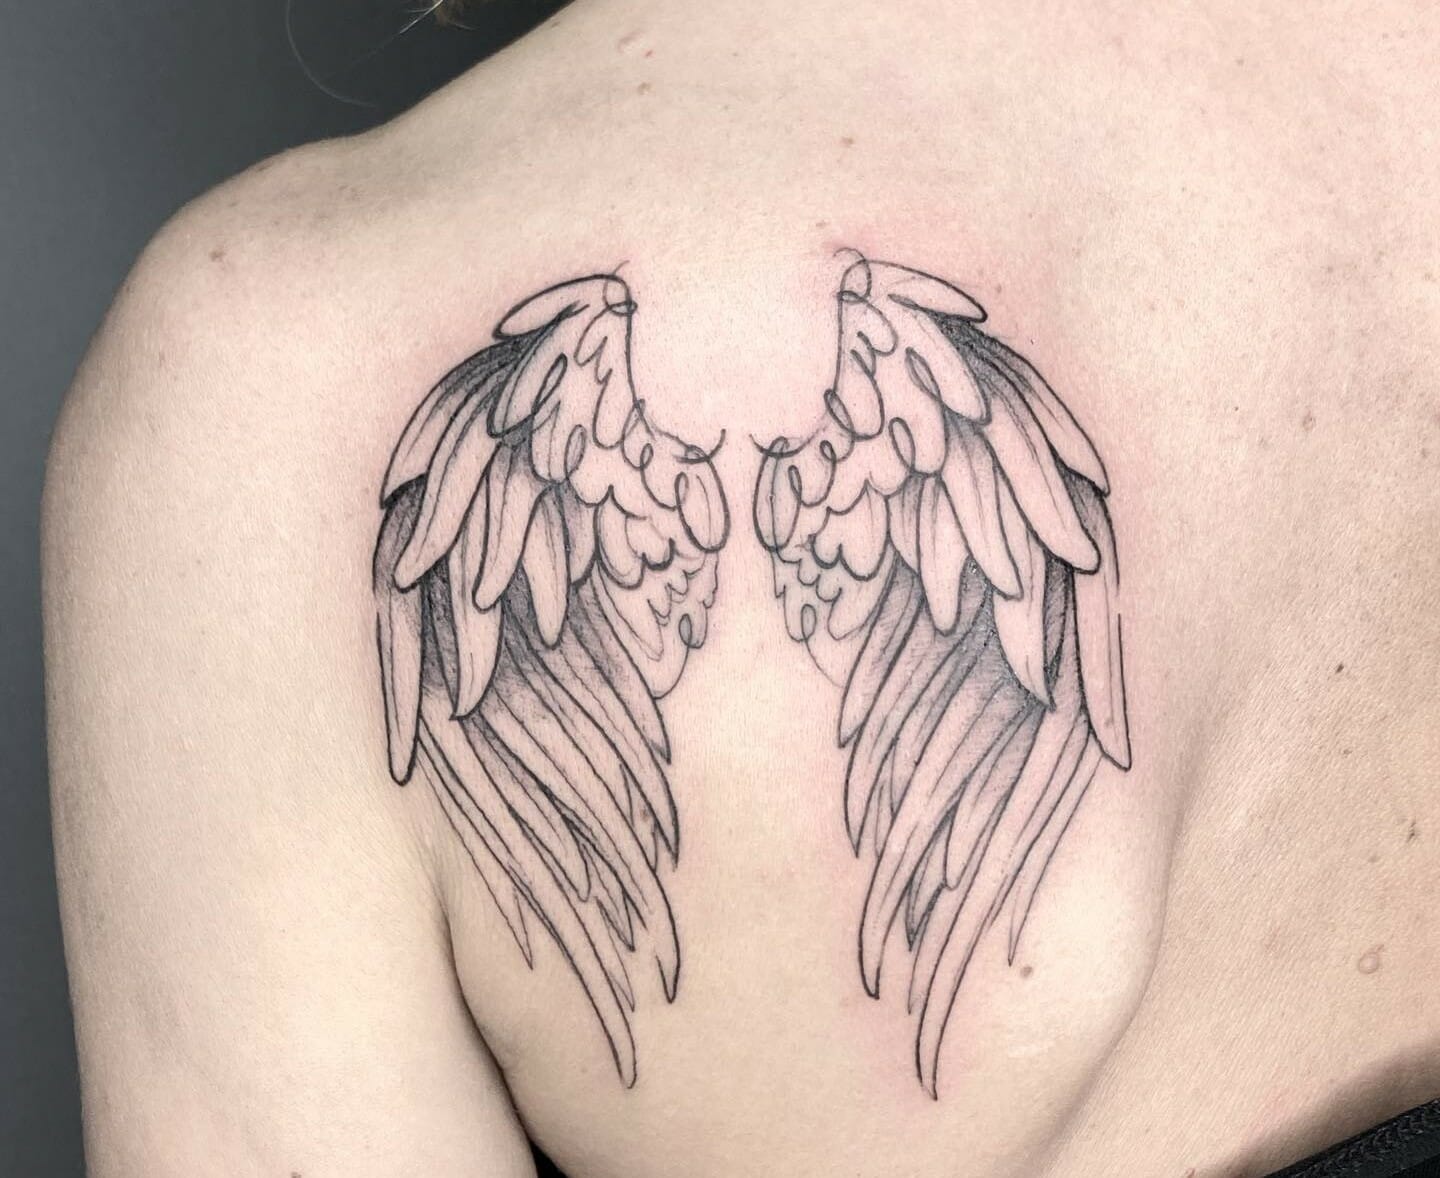 Large Arm Sleeve Tattoo Angel Wings Pigeon Jesus Waterproof Temporary  Sticker | eBay